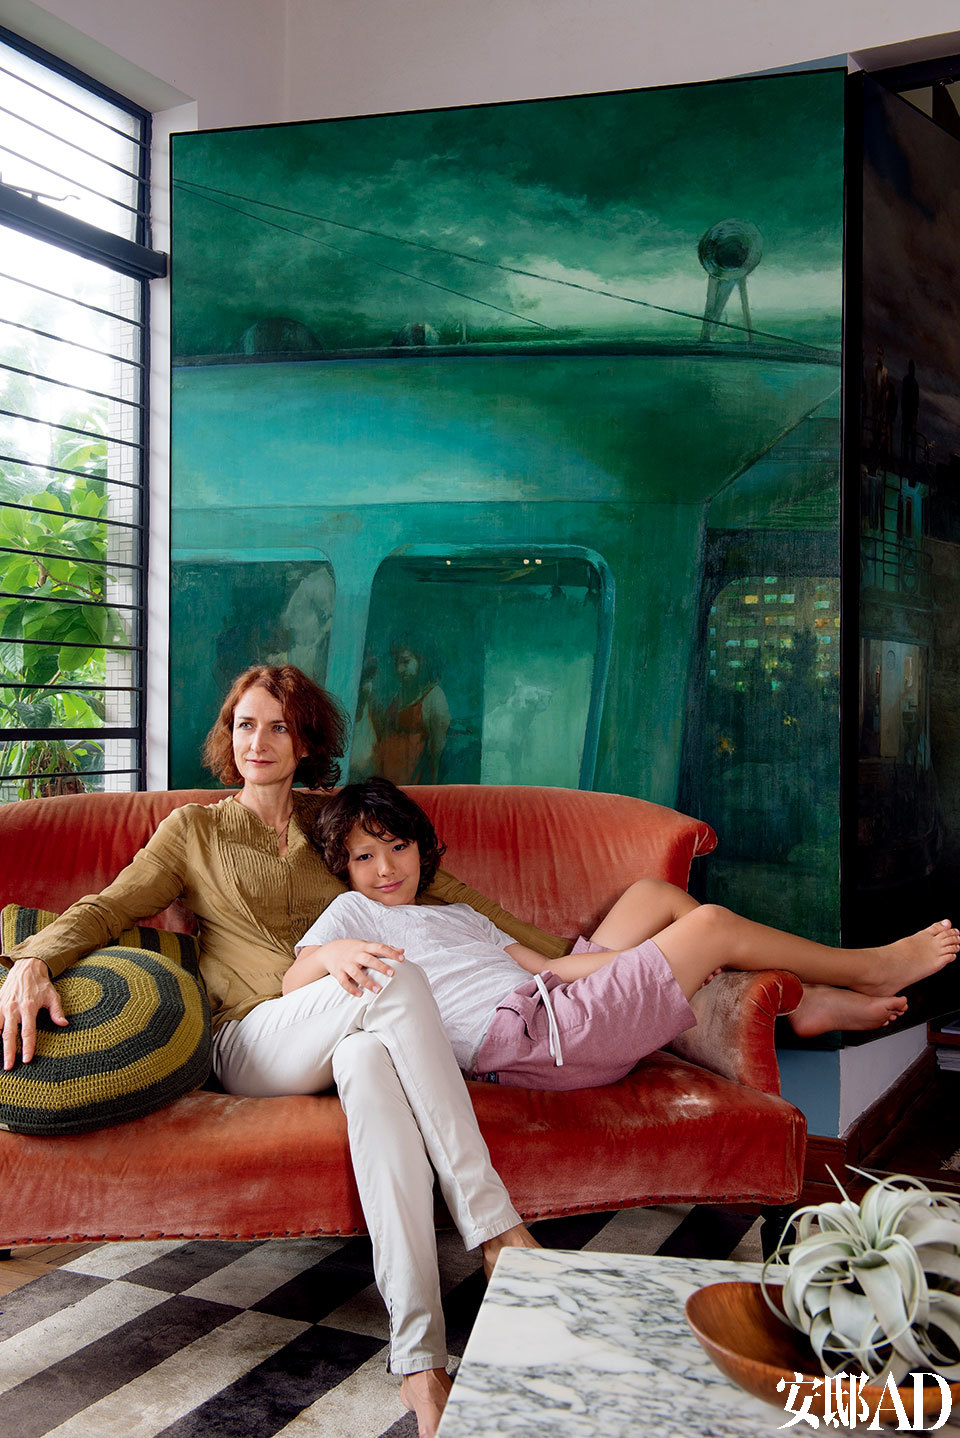 材质、款式以至出身地各异的沙发和椅子，是一家人的安乐“窝”。画家杨东龙描绘香港市貌的画作，呼应了墙身的绿调和窗外的绿荫，十分抢眼。购自巴黎跳蚤市集的1940年代橙红色丝绒沙发，她自言最爱窝在里面读报。主人：Debra Little，生于阿德莱德、后移居墨尔本的Debra，1991年应建筑公司之邀来到香港，参与机场、酒店和企业等设计项目，而后成立自己的设计顾问公司、开设独立设计品店DeeM，2011年开始经营艺廊“。当初并没想过投身艺术行列，就如同当年在香港留下来发展事业一样，一切只是随心而动。”